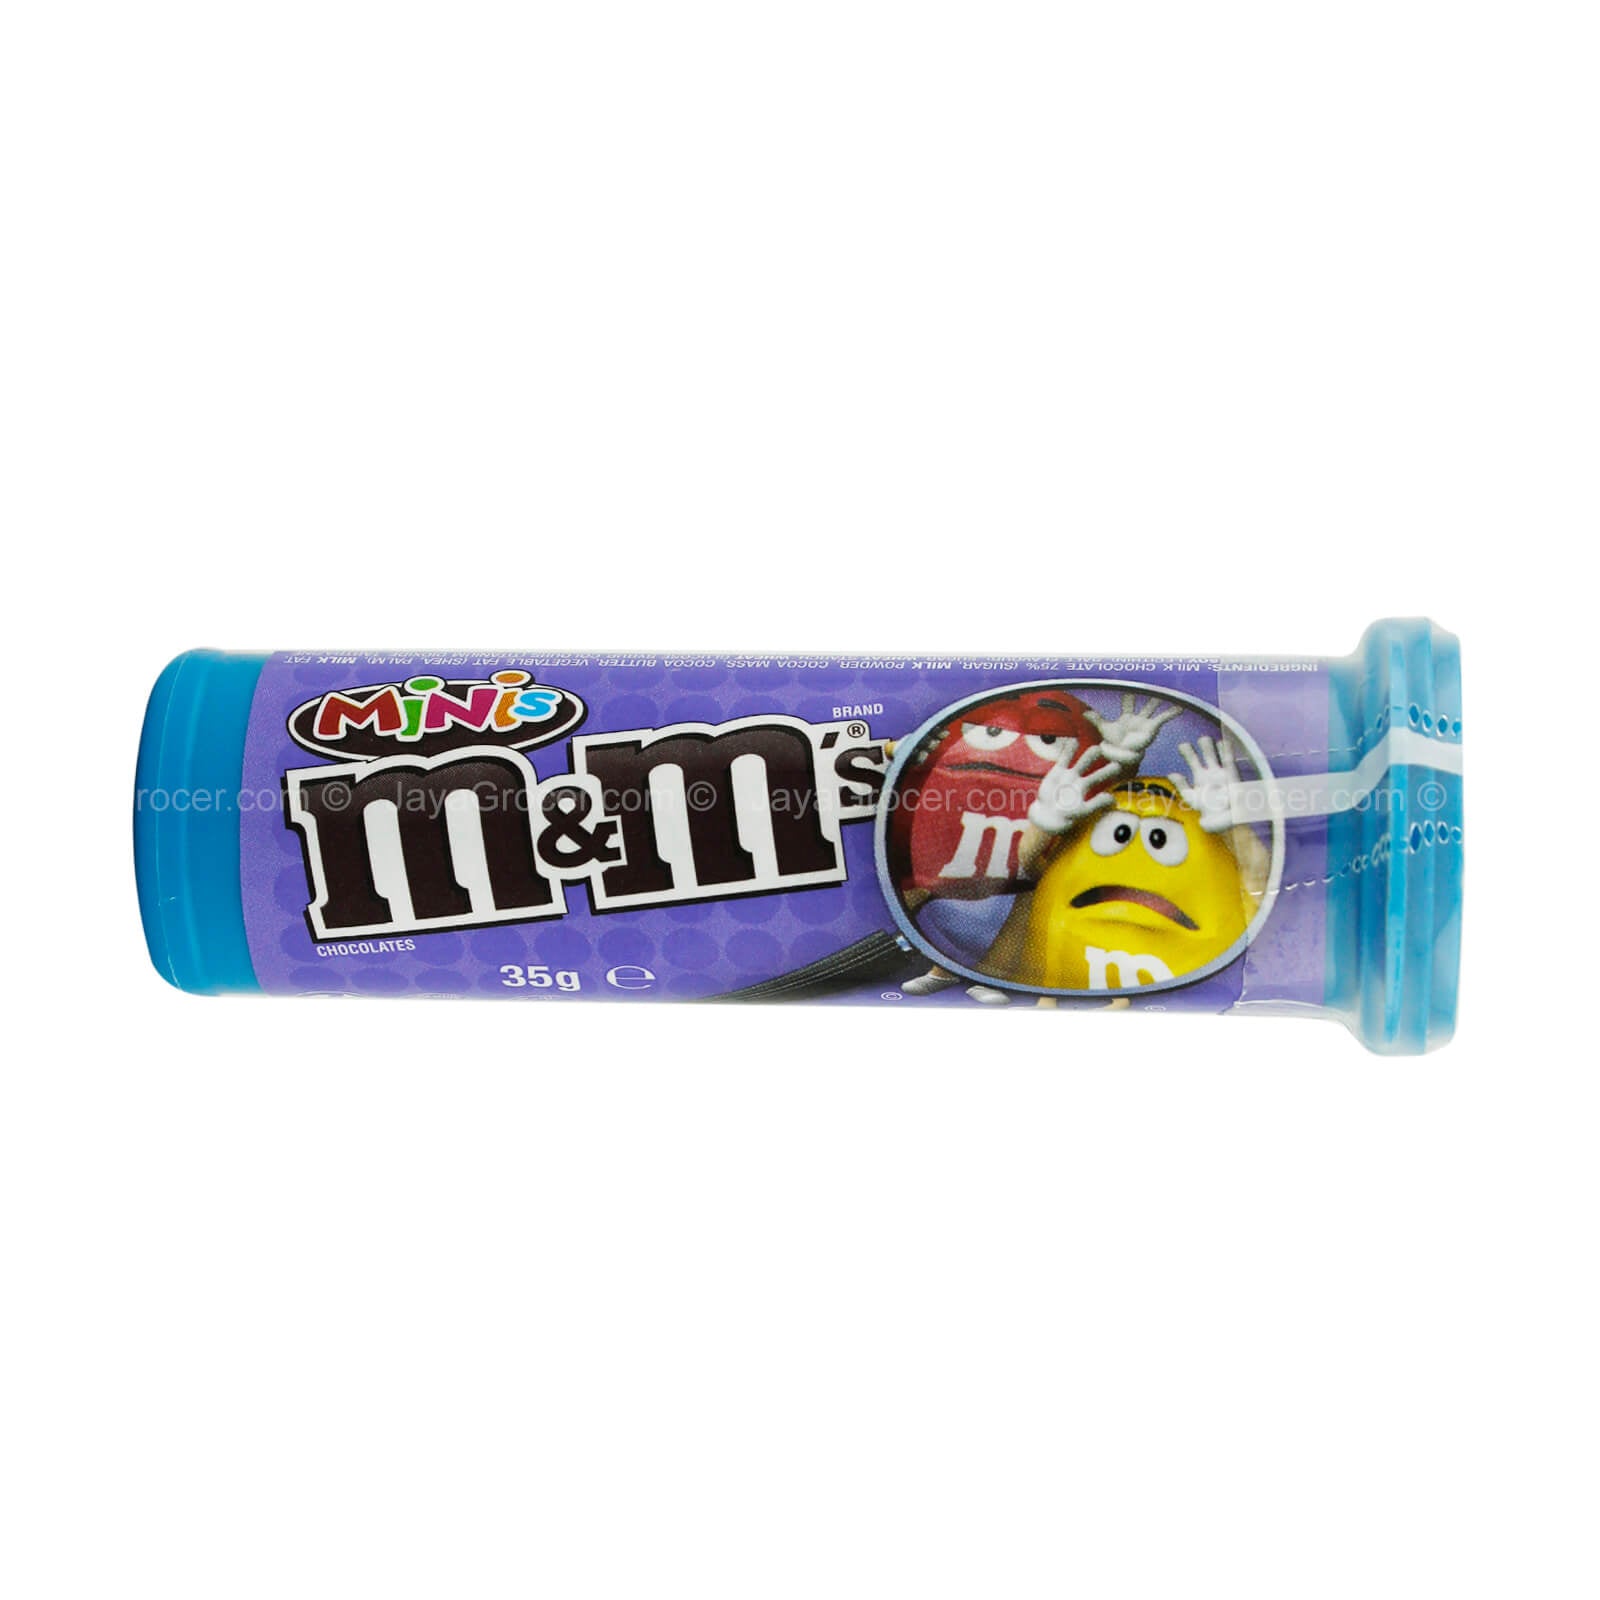 M&m's Minis Milk Chocolate Treat Tube 35g